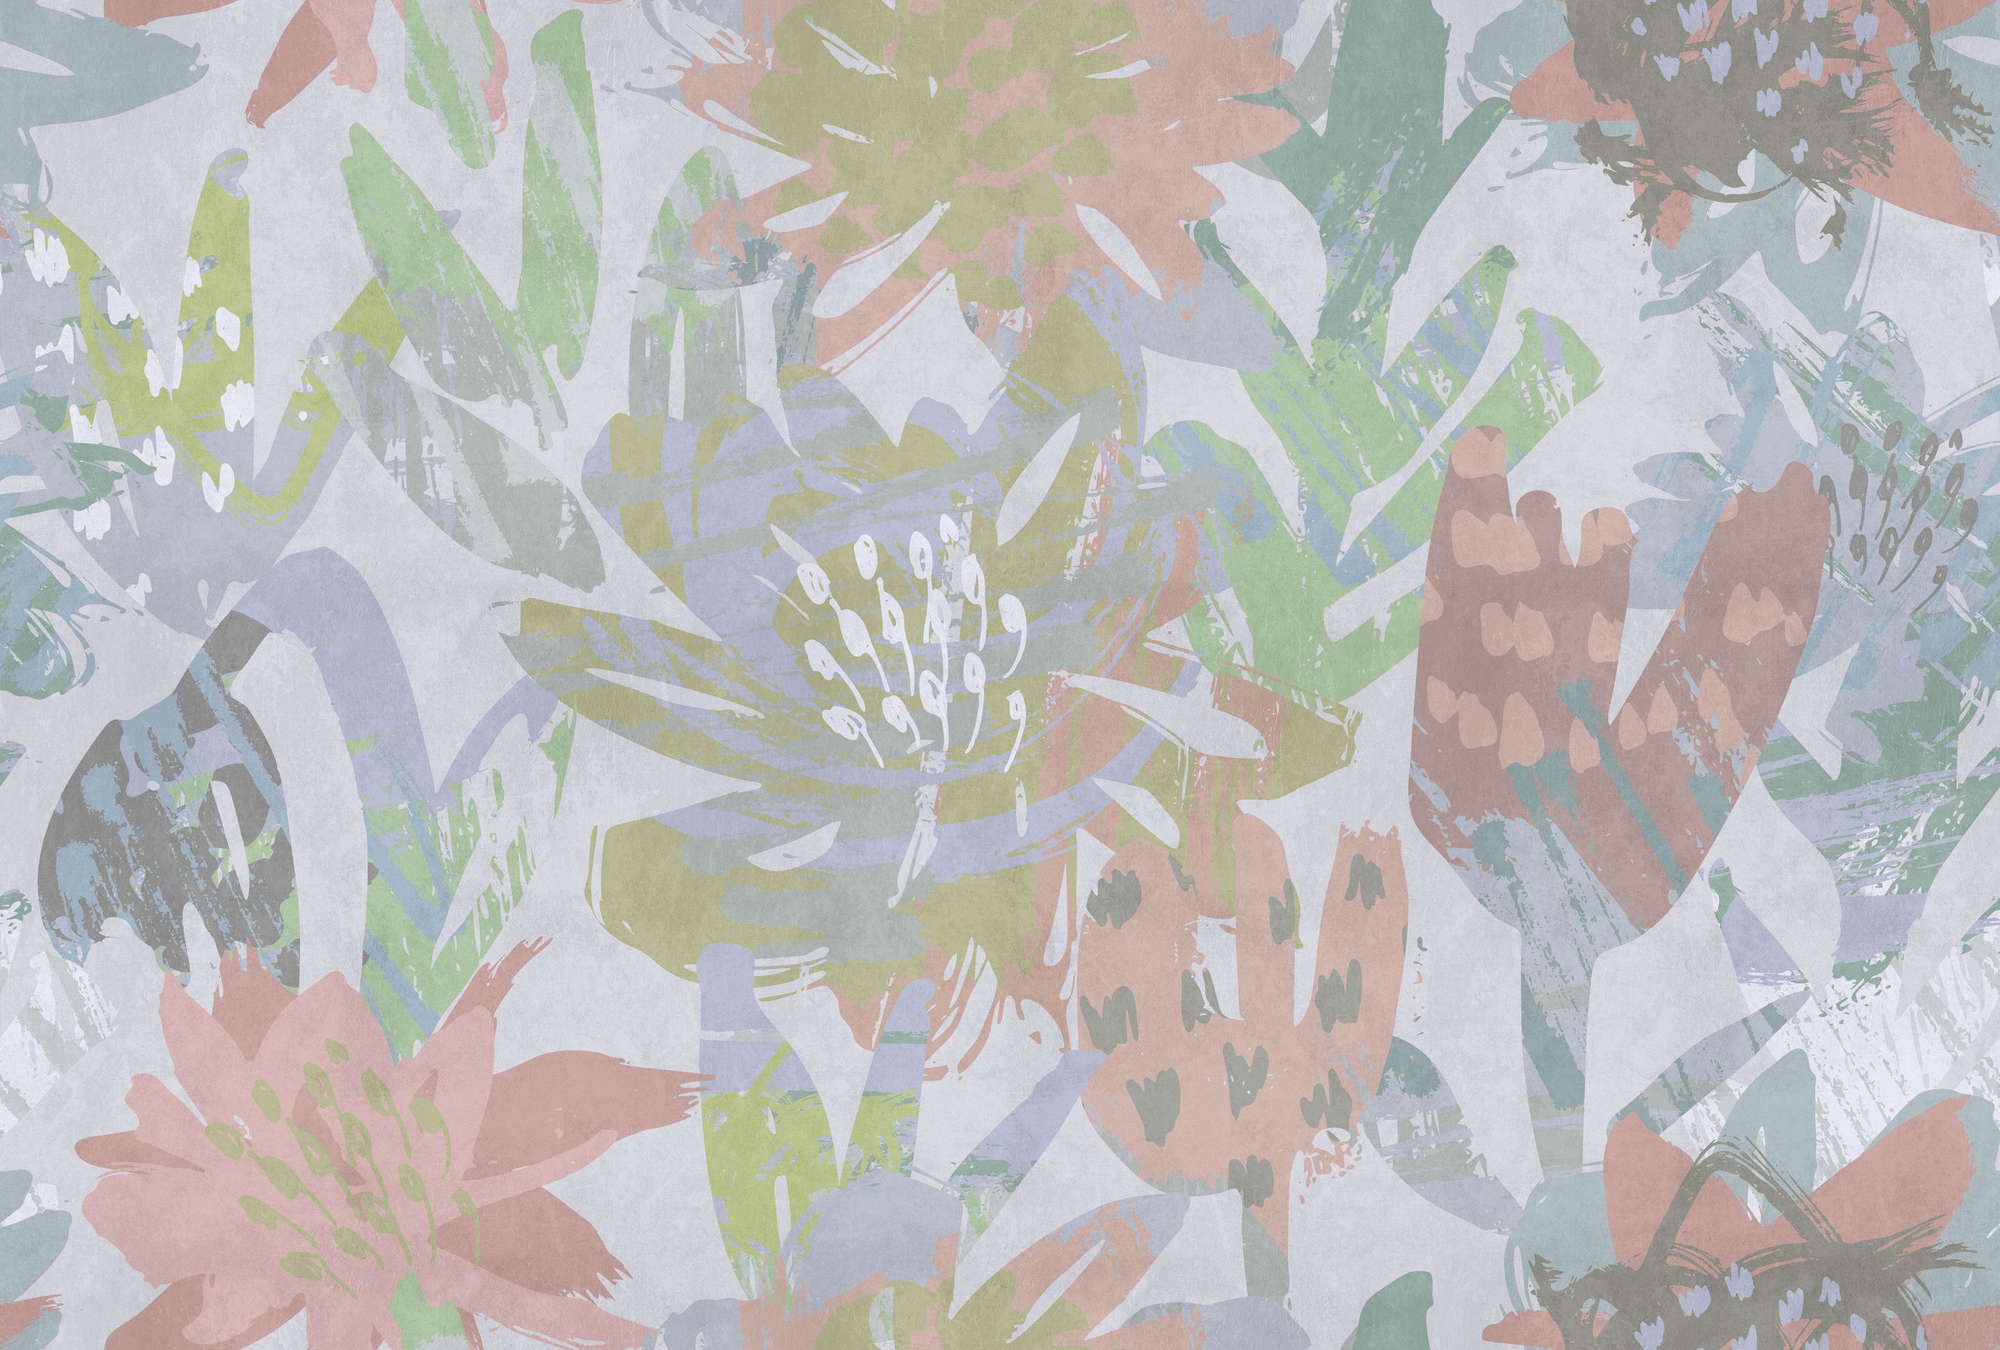             Fotomurali »sophia« - Motivo floreale colorato su intonaco di cemento - Materiali non tessuto liscio e leggermente perlato
        